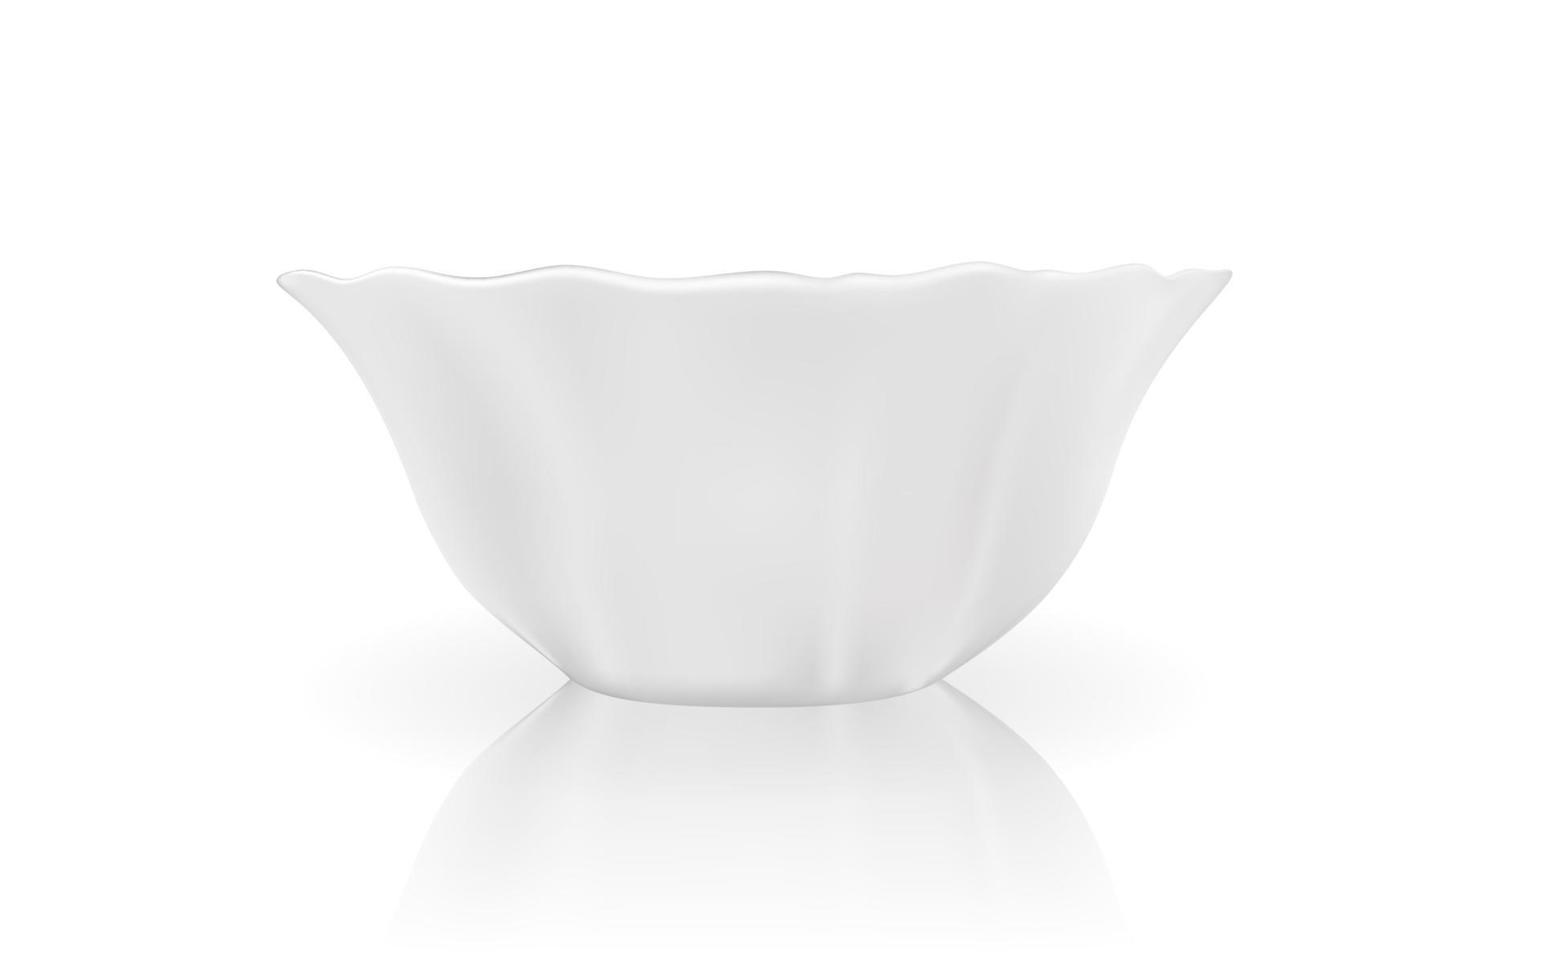 modello 3d realistico di piatto bianco. illustrazione vettoriale